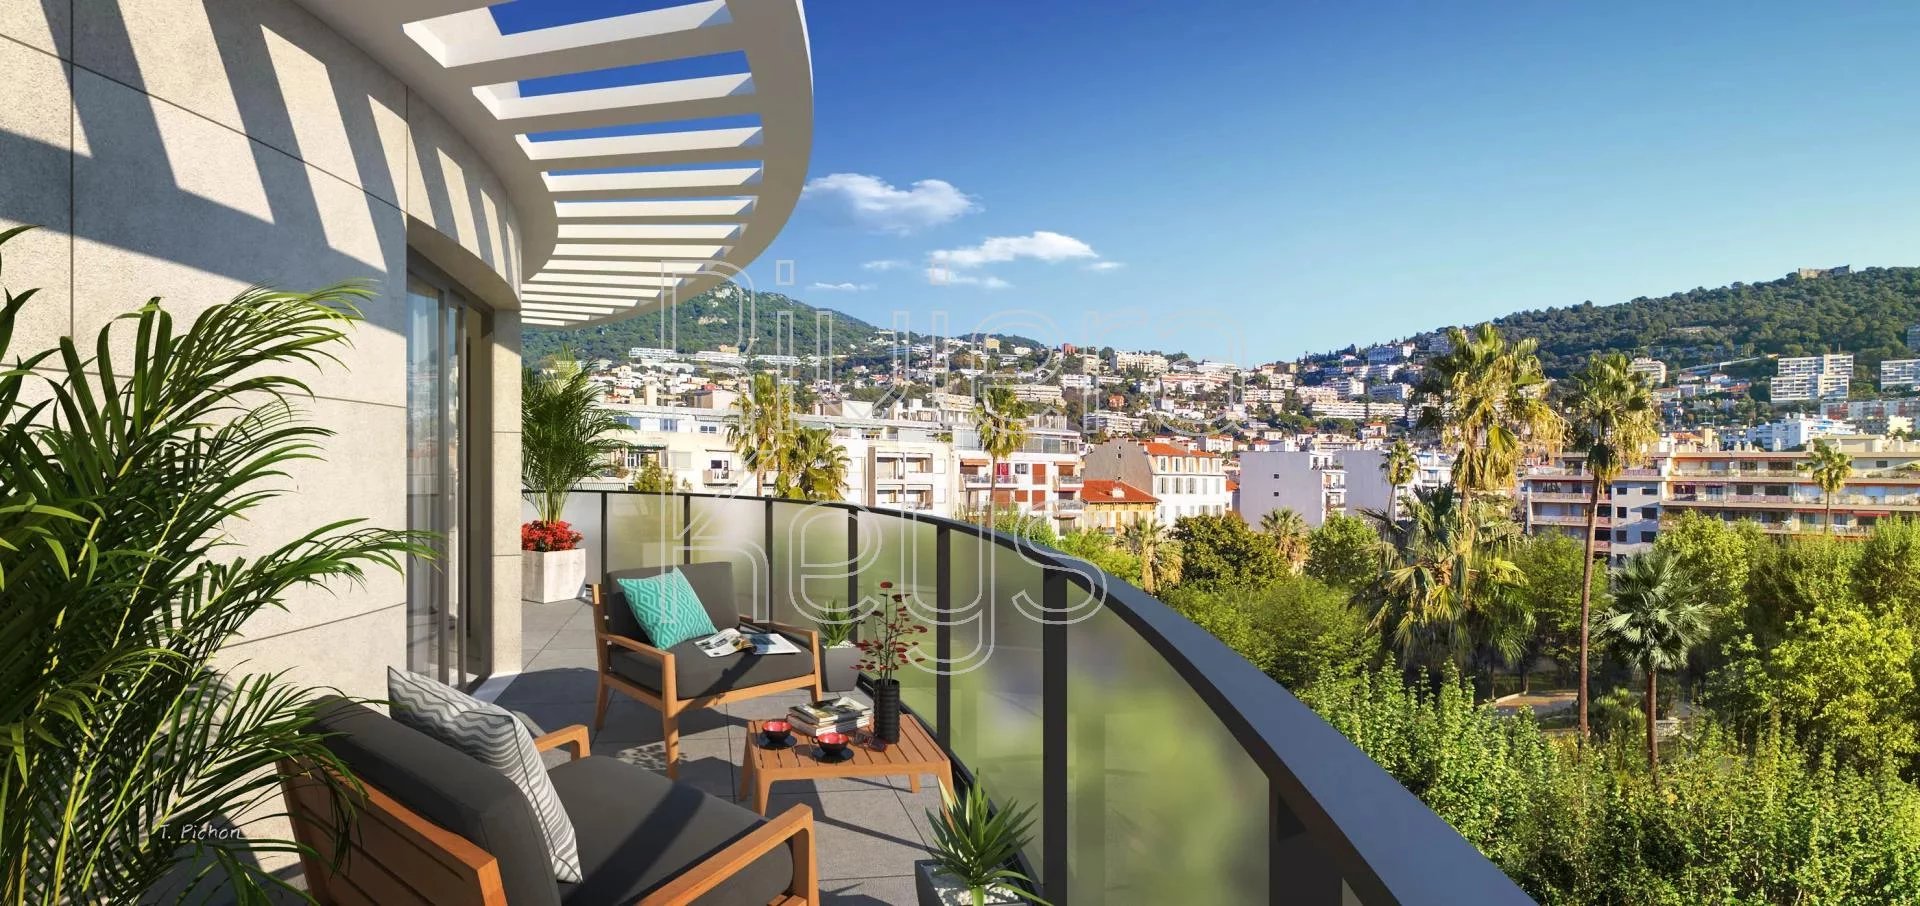 Nye leiligheter fra 1 til 4 rom, terrasse, åpen utsikt, i Nice sentrum